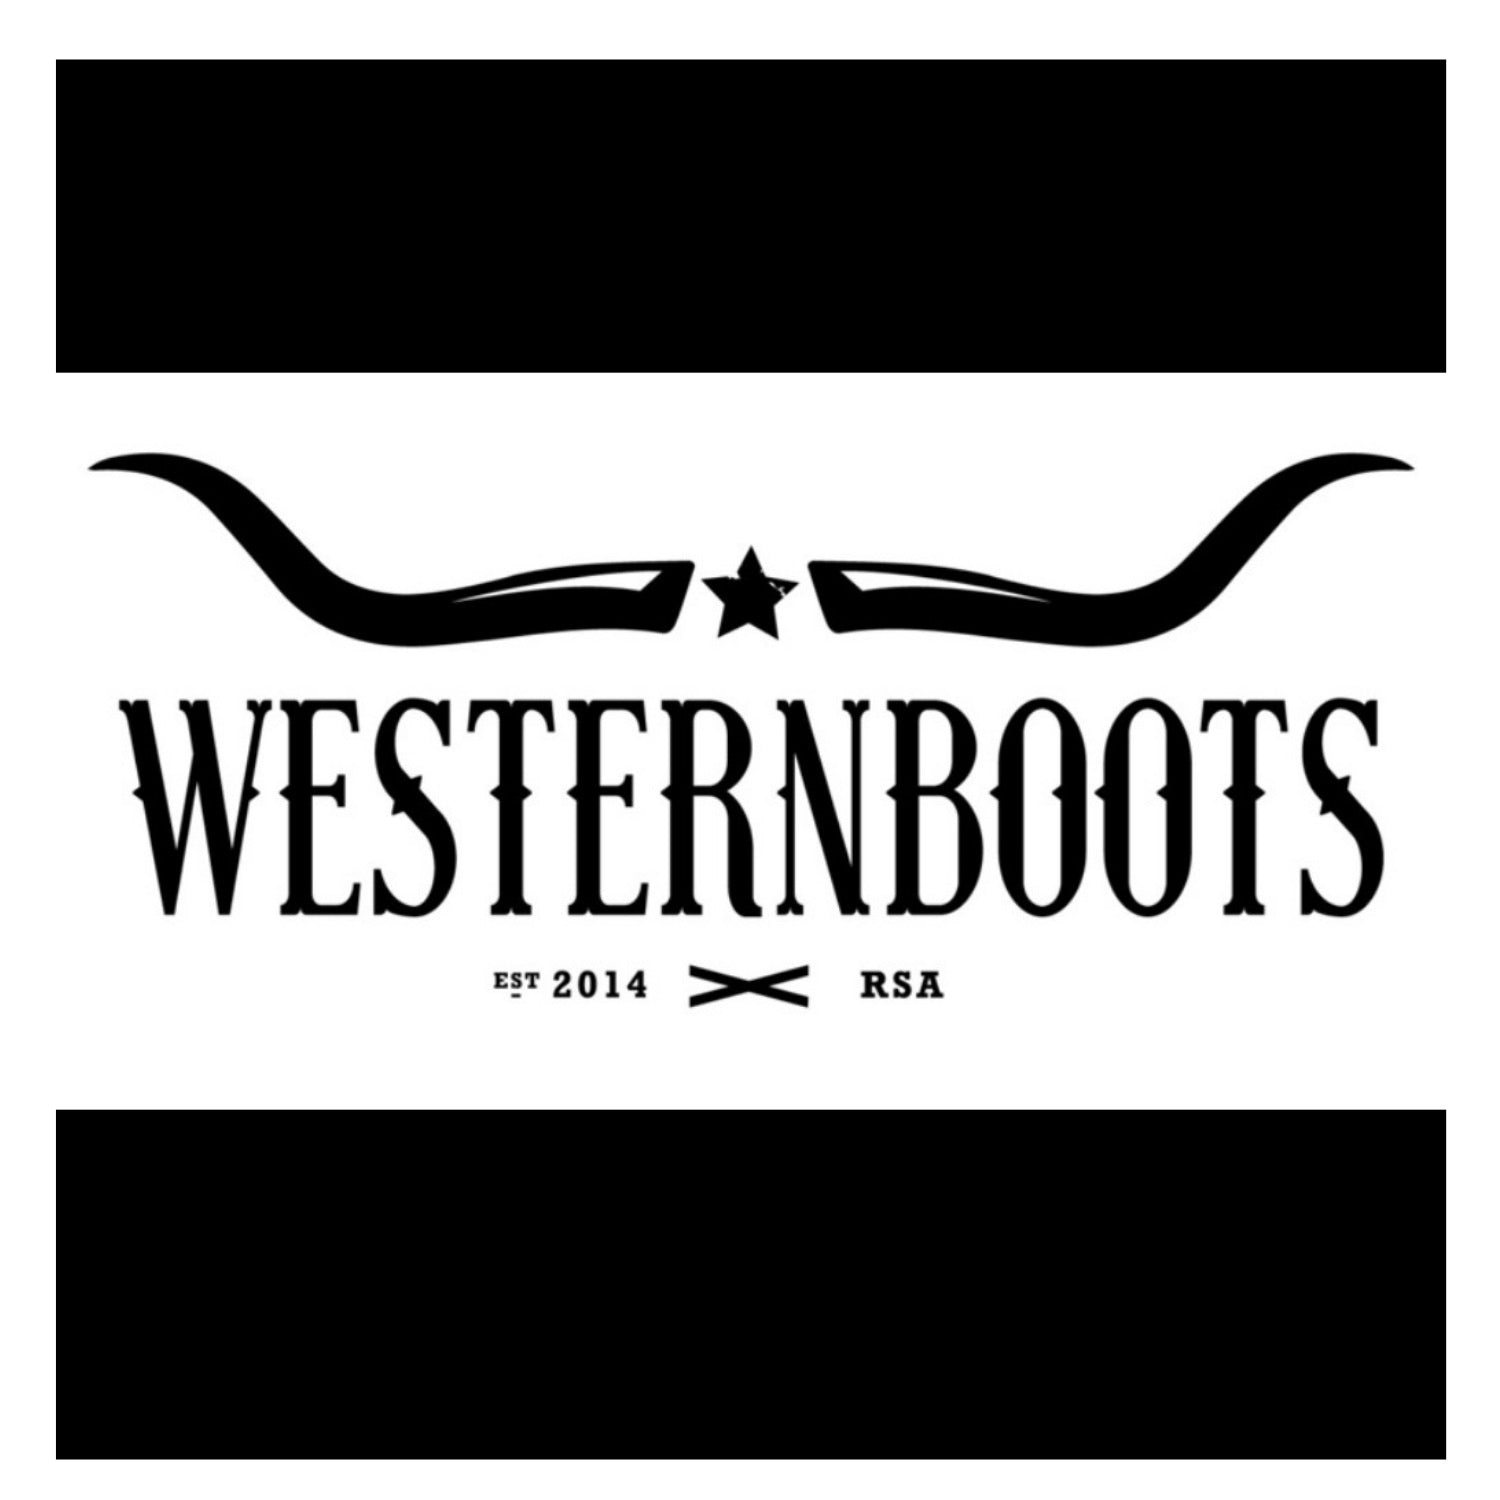 westernbootssa.com